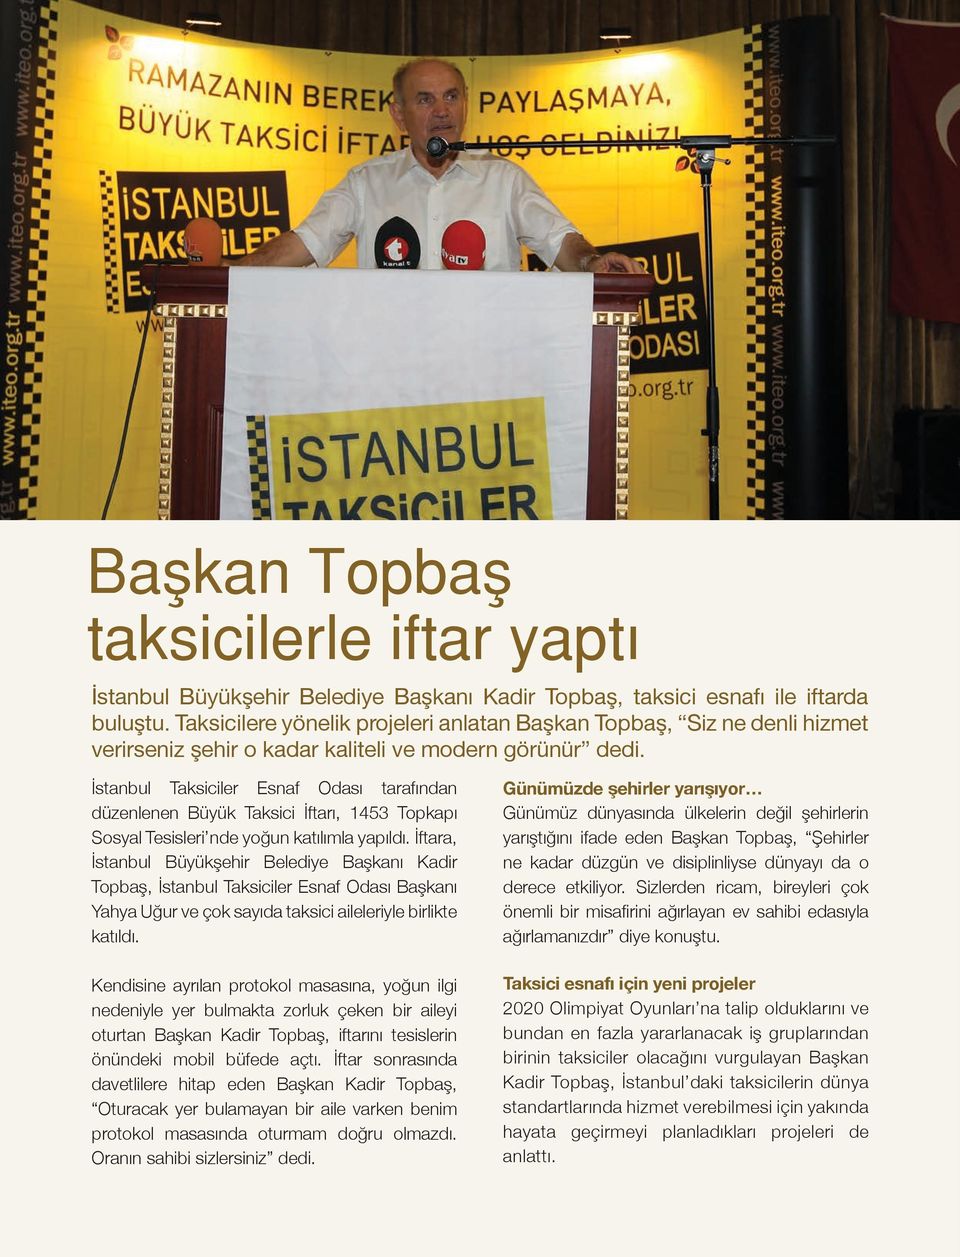 İstanbul Taksiciler Esnaf Odası tarafından düzenlenen Büyük Taksici İftarı, 1453 Topkapı Sosyal Tesisleri nde yoğun katılımla yapıldı.